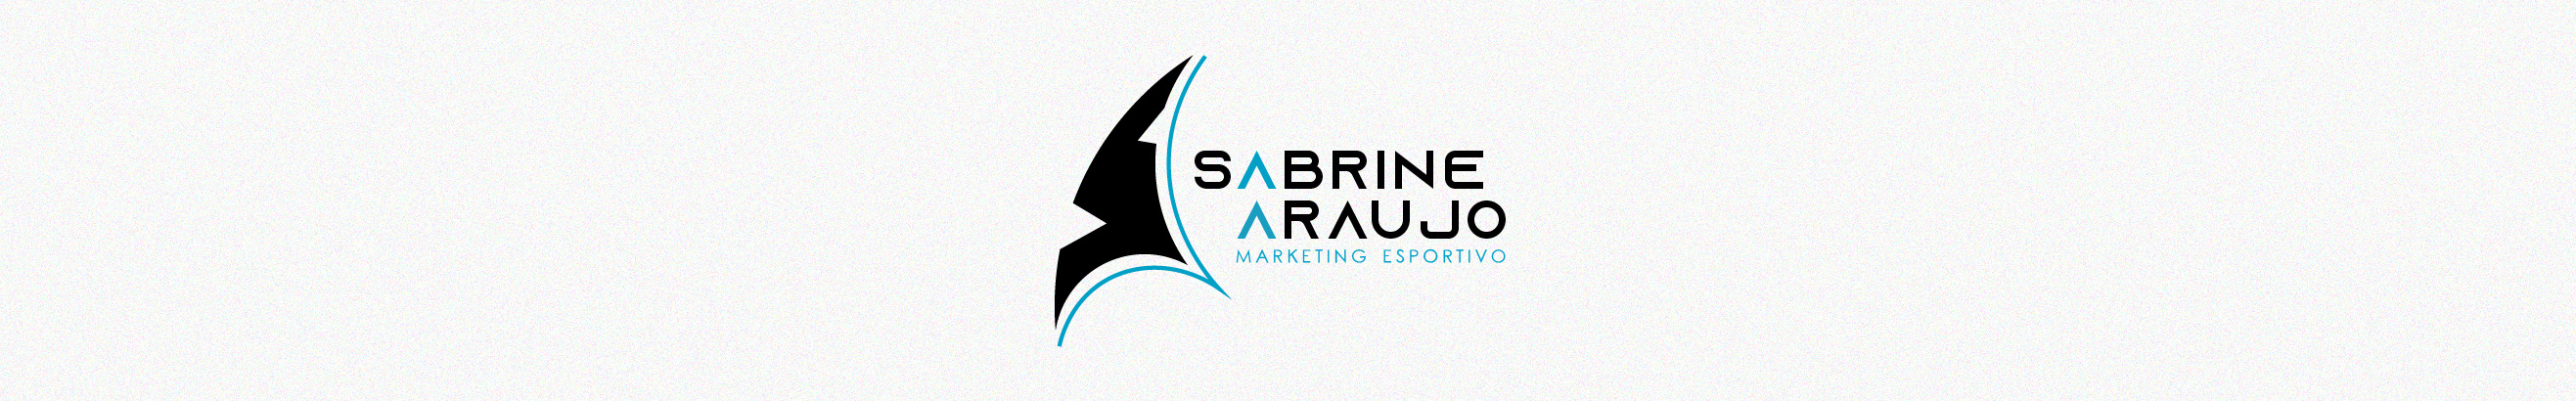 Sabrine Araujo's profile banner